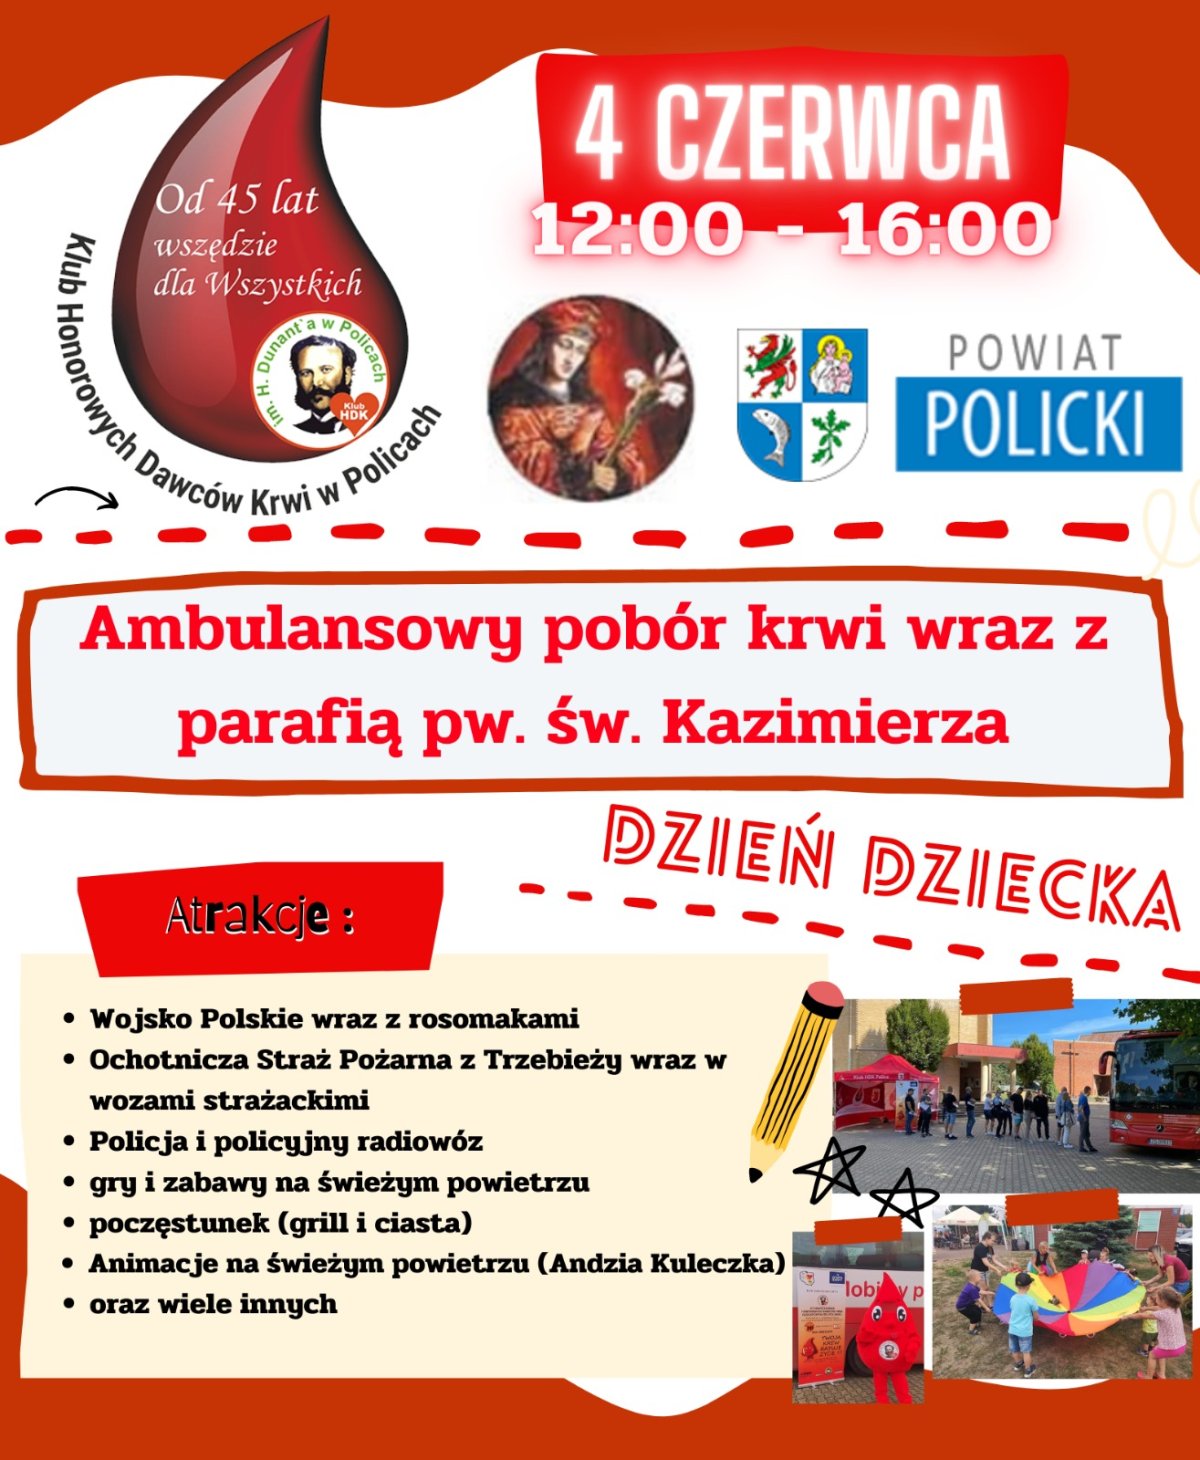 Plakat ogłaszający Ambulansowy pobór krwi wraz z parafią św. Kazimierza w Policach z informacją o odbywających się atrakcjach oraz dacie wydarzenia.